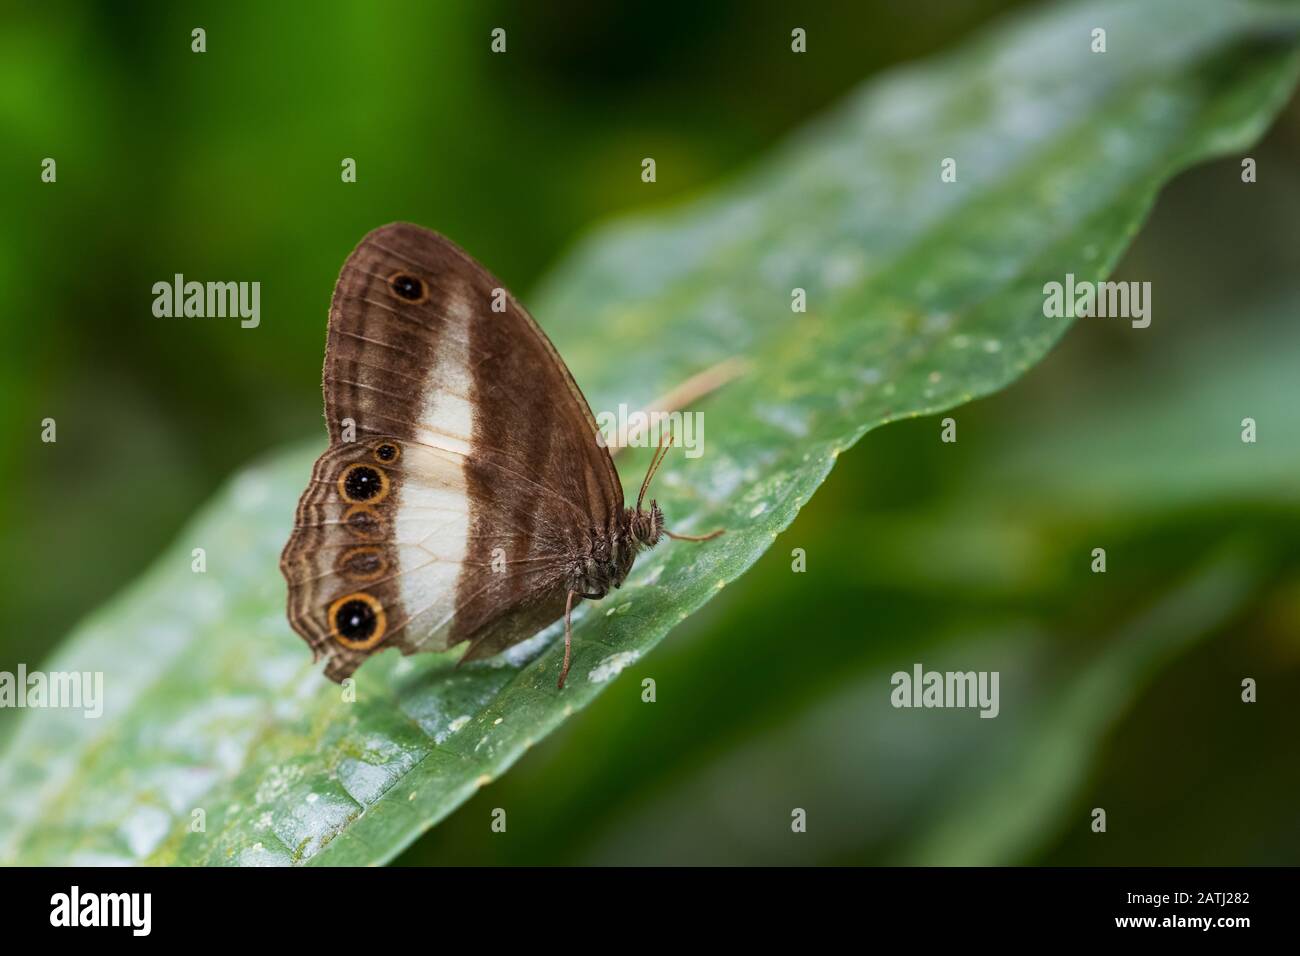 Le butterflie de Satyrid - Euptychoides albofasciata, beau papillon brun et blanc des forêts d'Amérique du Sud, les pentes andines de l'est, le Sumaco sauvage Banque D'Images